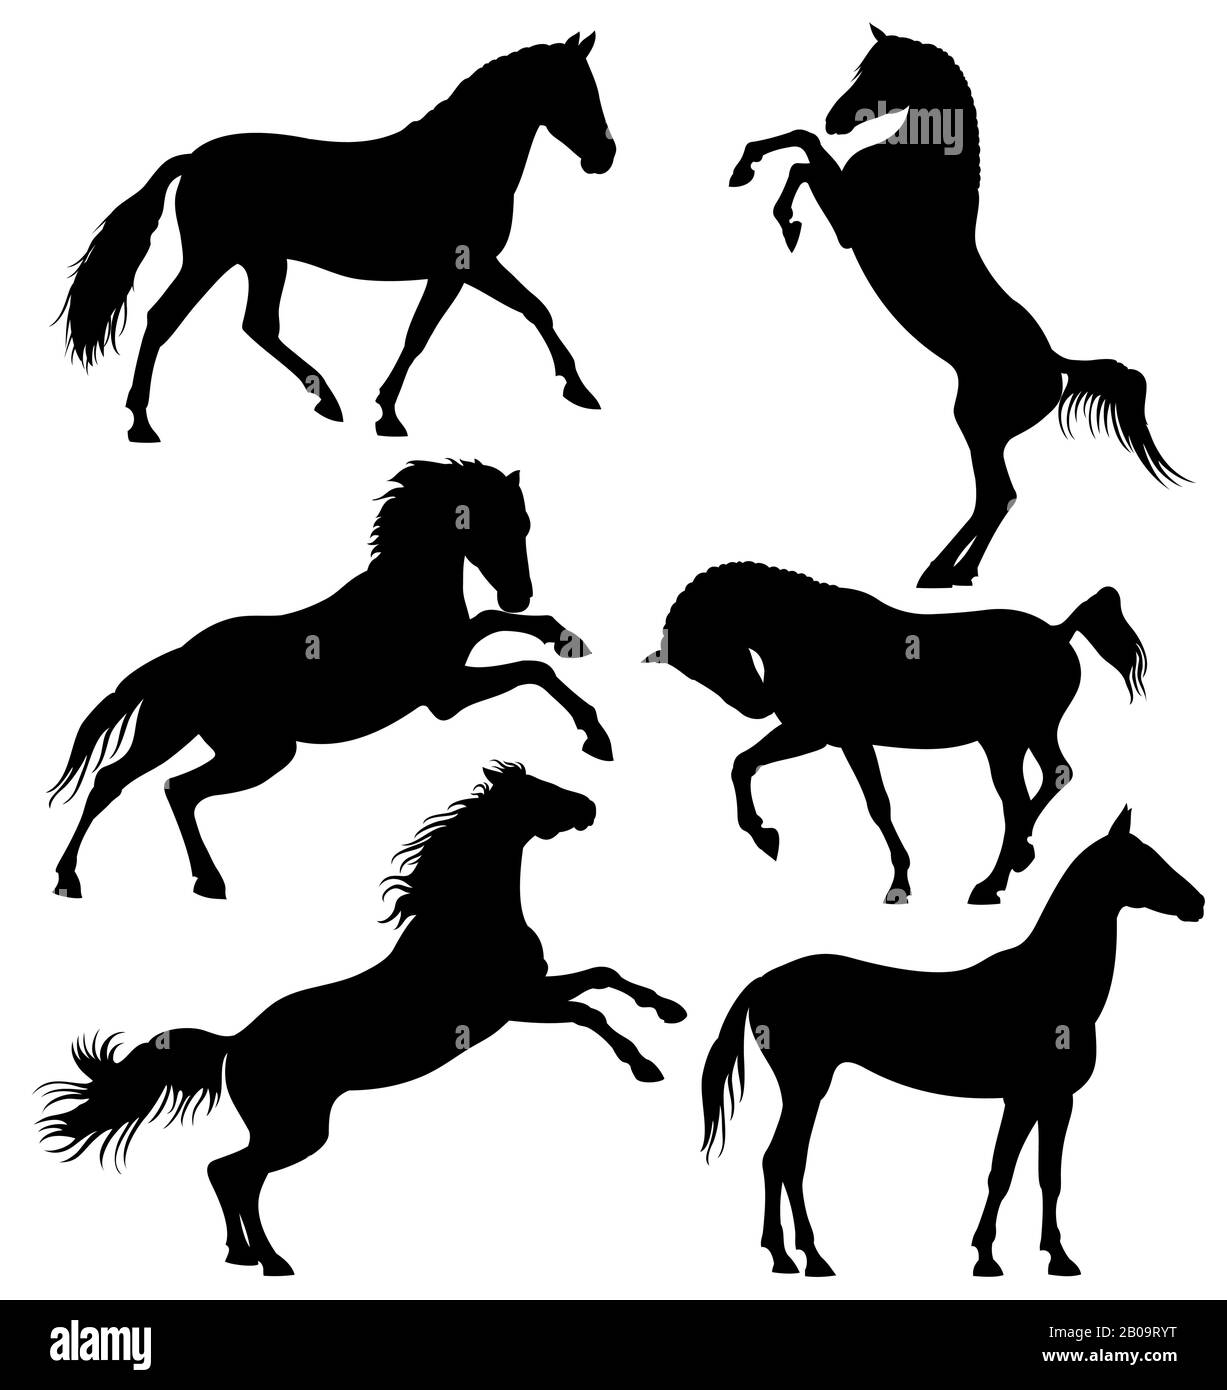 Cheval sauvage foncé, chevaux de course à pied vector silhouettes isolé sur fond blanc. Silhouettes de cheval sauvage, illustration de cheval de vitesse de mammifère animal Illustration de Vecteur